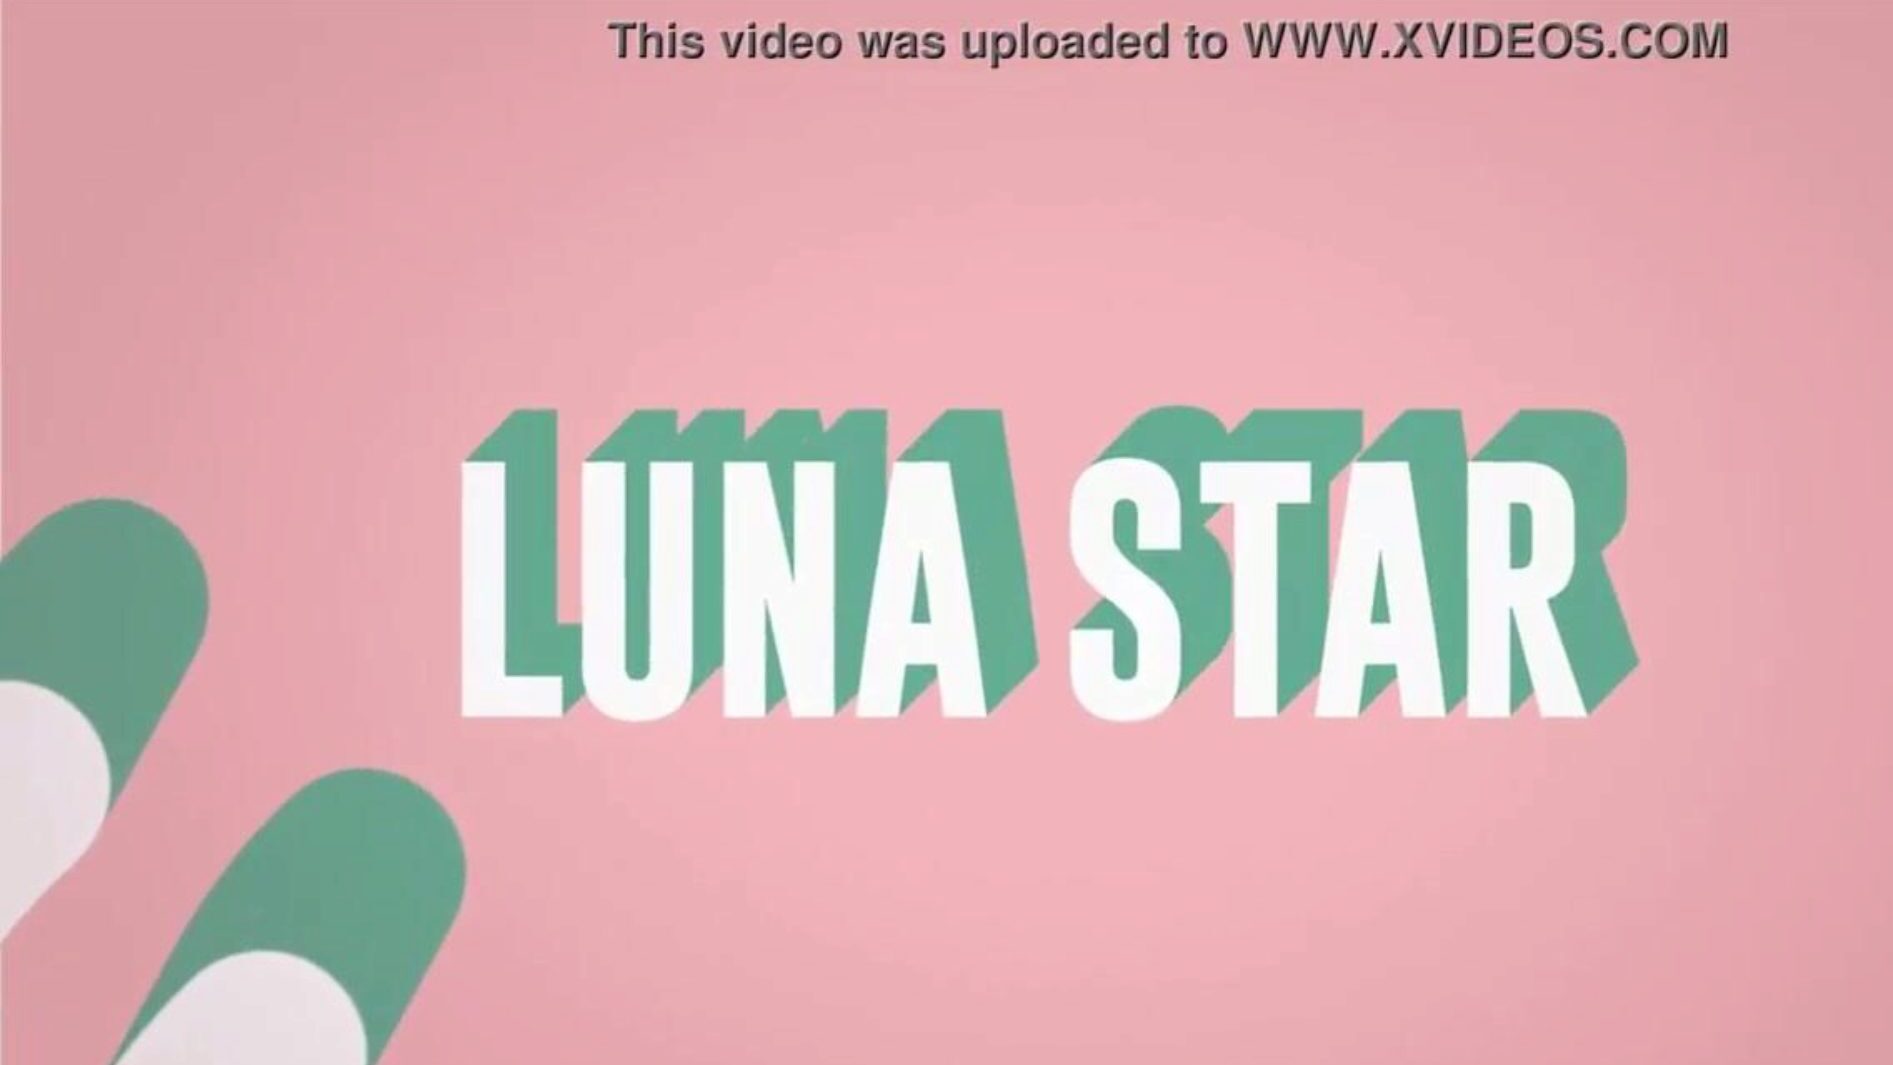 c'est mon putain de wifi: brazzers en concert avec Luna Star; voir en entier sur www.zzfull.com/luna